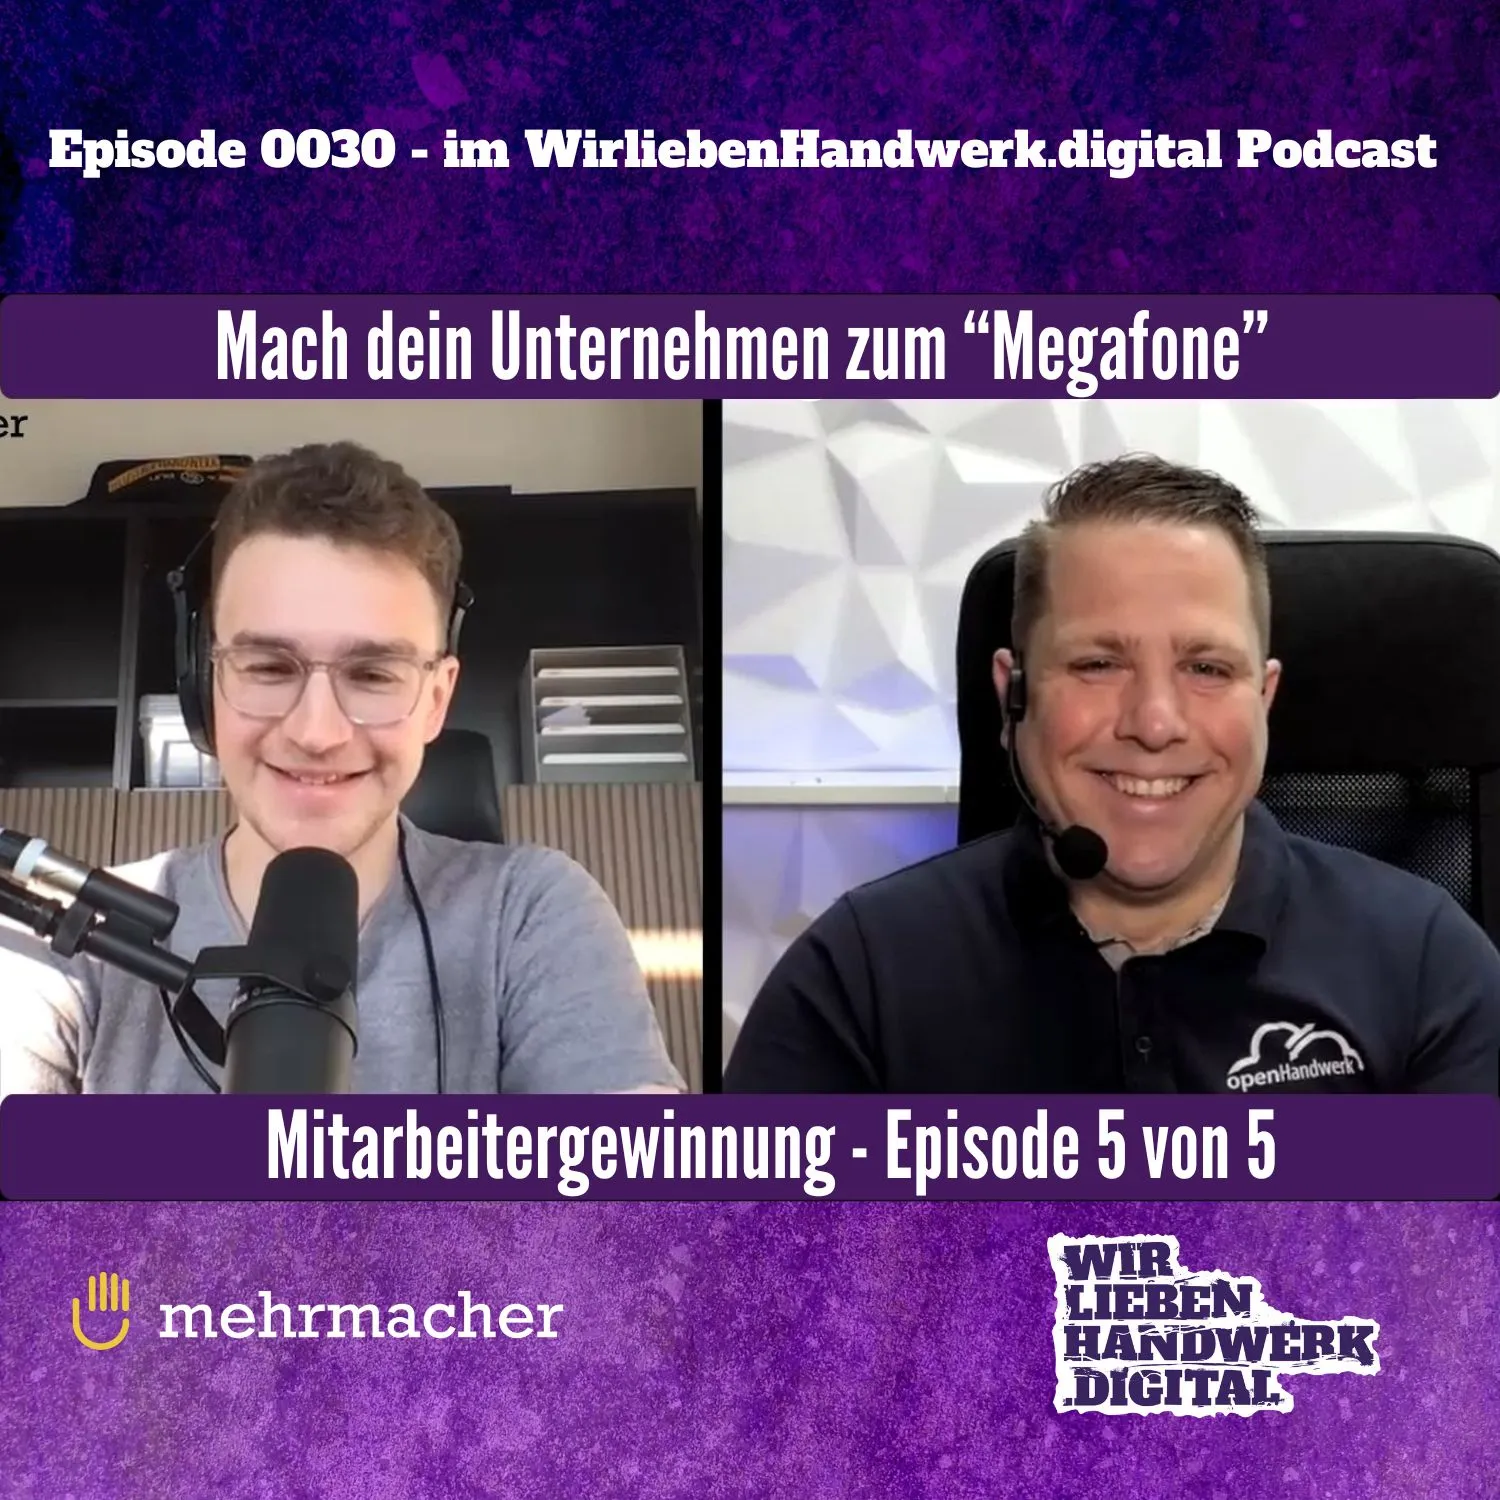 Mitarbeitergewinnung - Fachkräftemangel im Handwerk - "Mach dein Unternehmen zum Megafone" - Podcast Episode mit Leon Fleischmann von mehrmacher GmbH im WirliebenHandwerk.digital Podcast